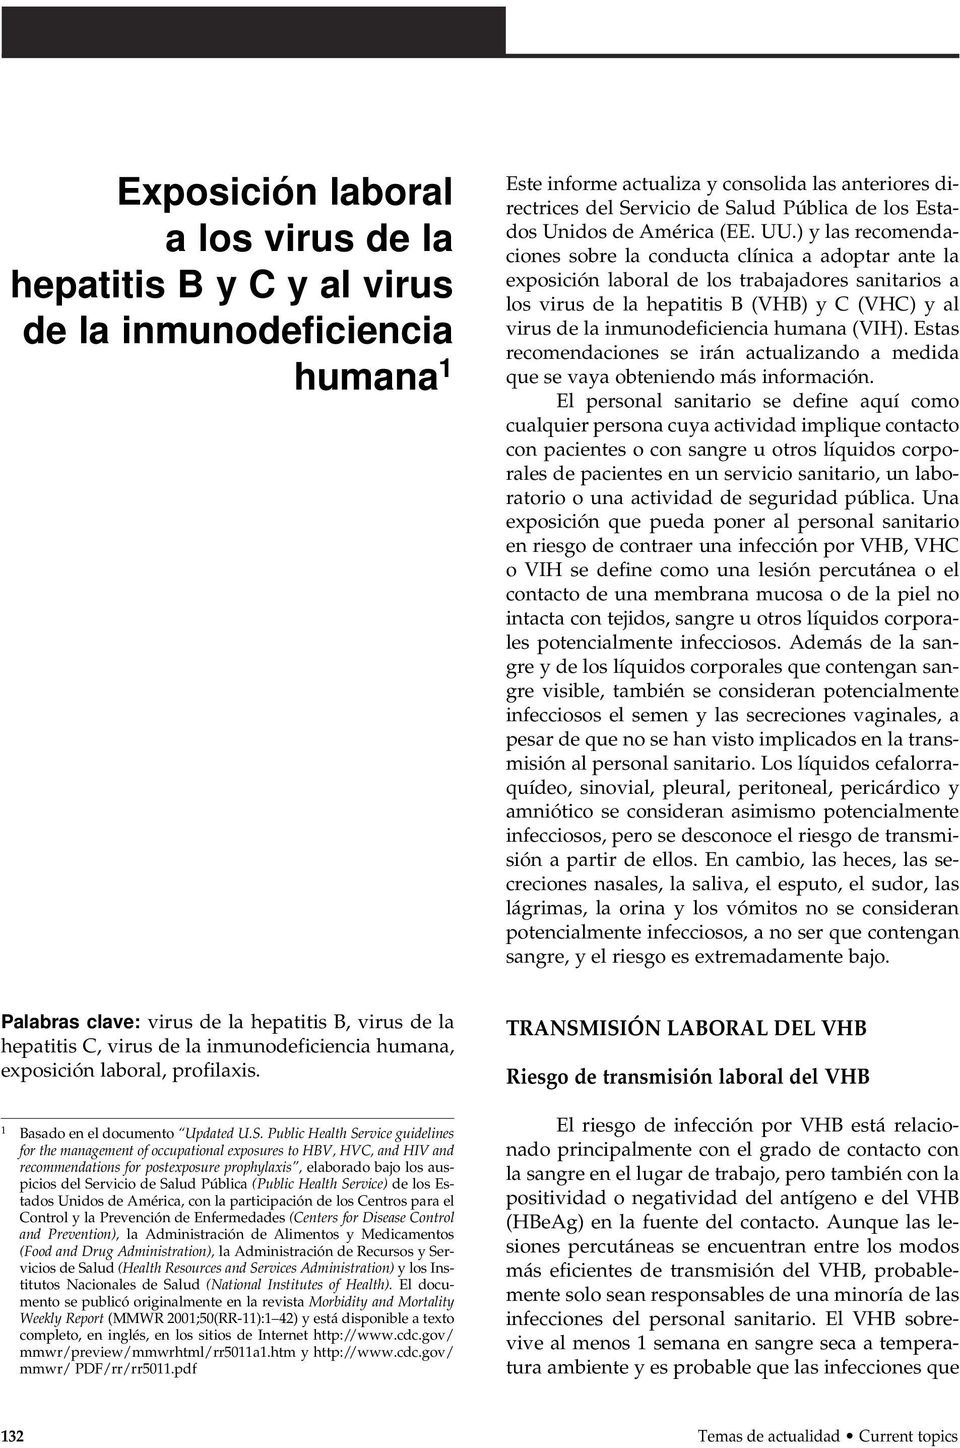 ) y las recomendaciones sobre la conducta clínica a adoptar ante la exposición laboral de los trabajadores sanitarios a los virus de la hepatitis B (VHB) y C (VHC) y al virus de la inmunodeficiencia